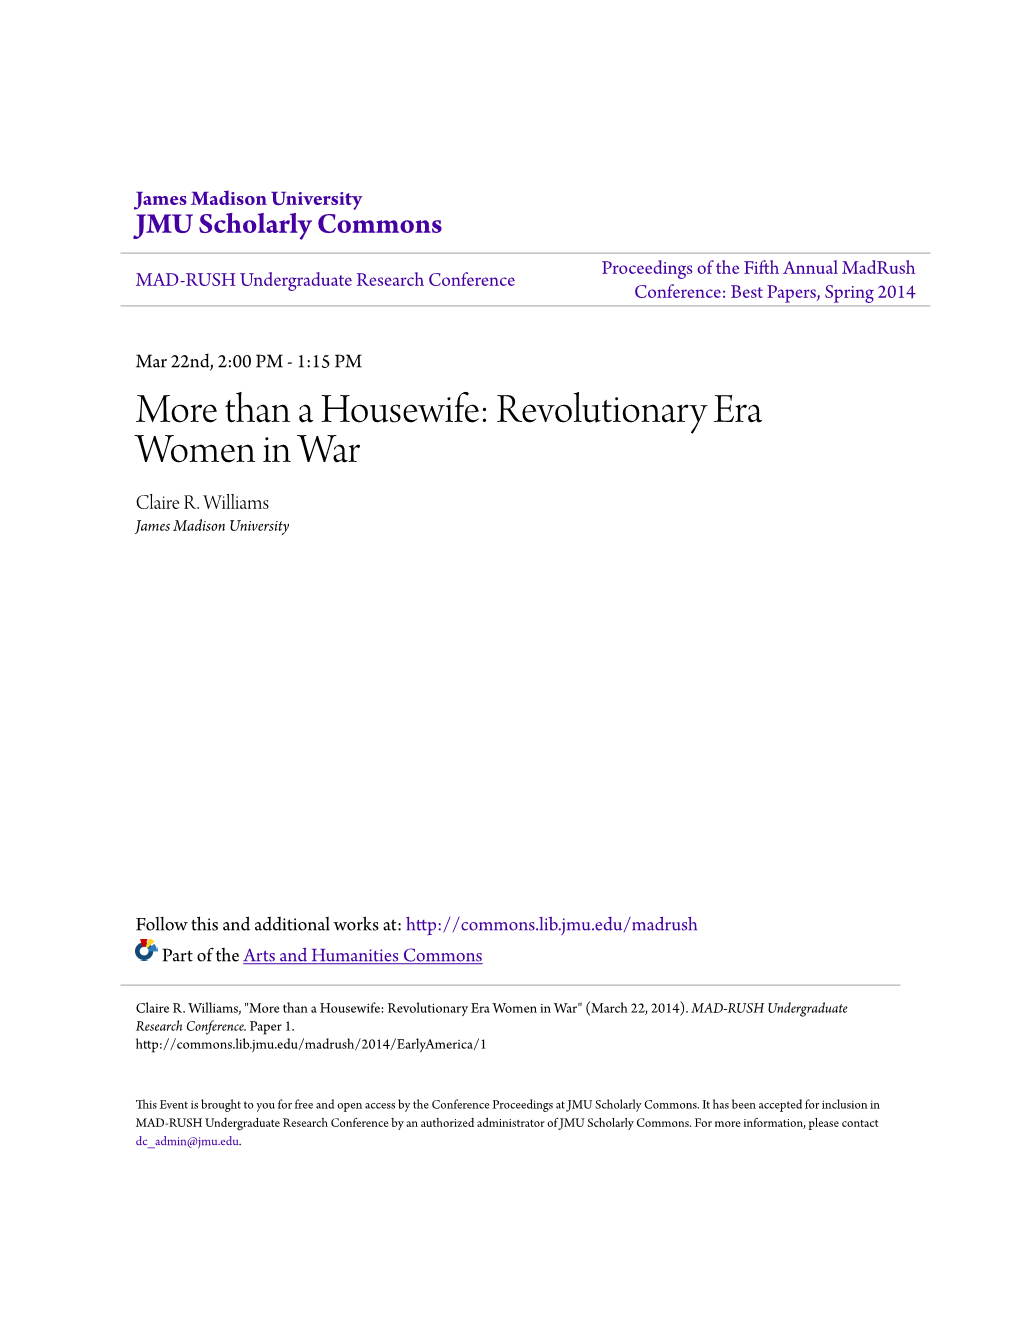 Revolutionary Era Women in War Claire R